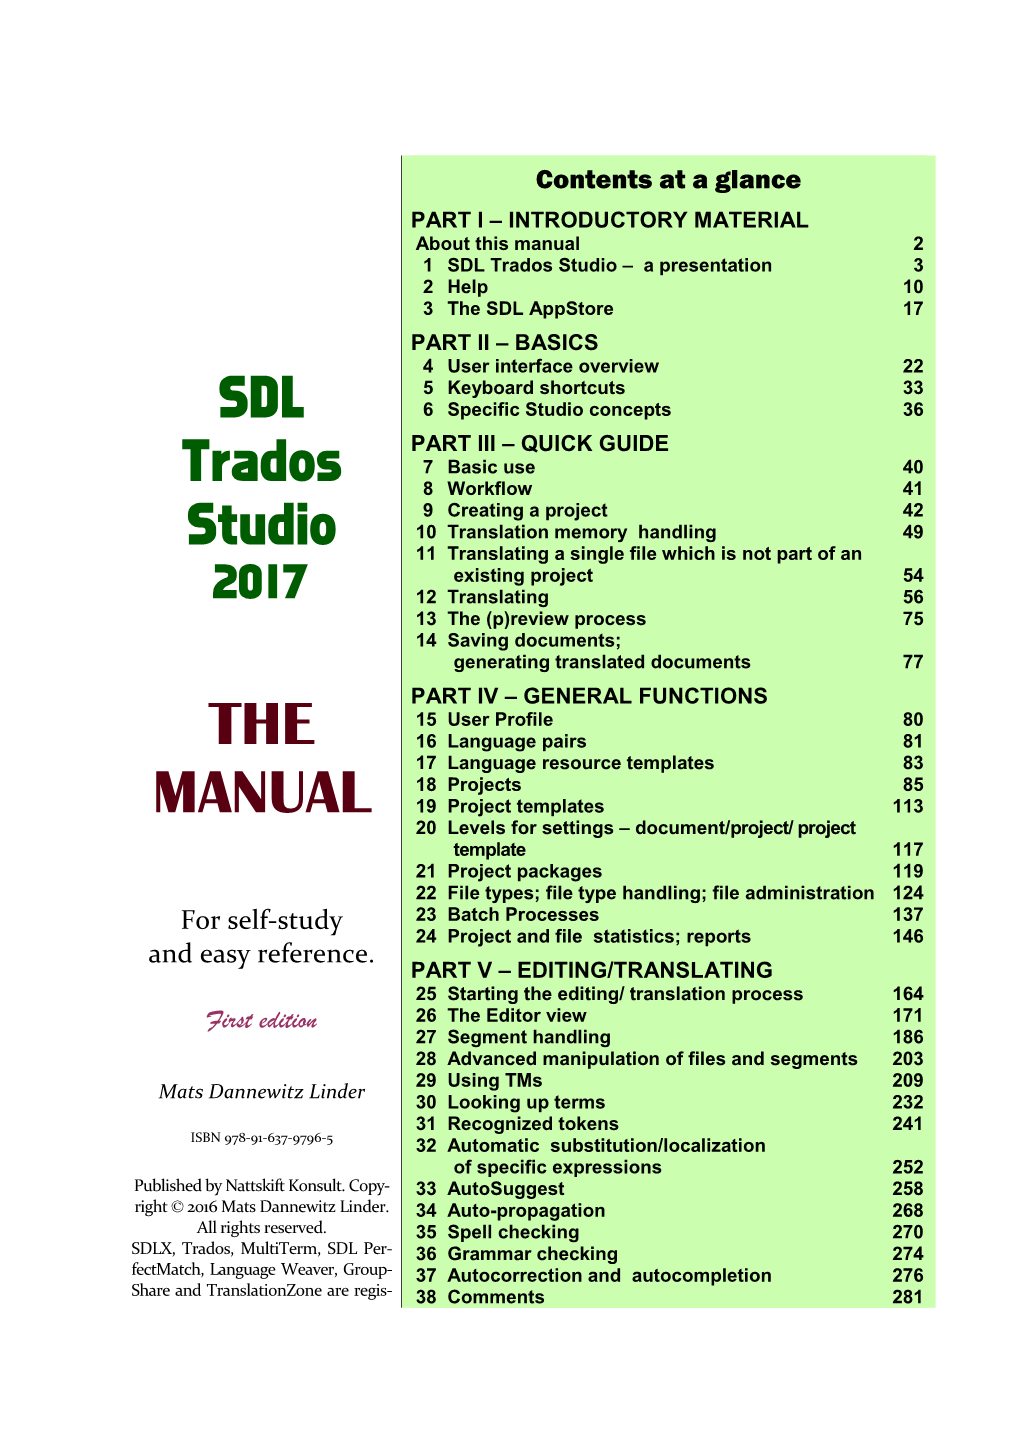 THE MANUAL I SDL Trados Studio – a Presentation